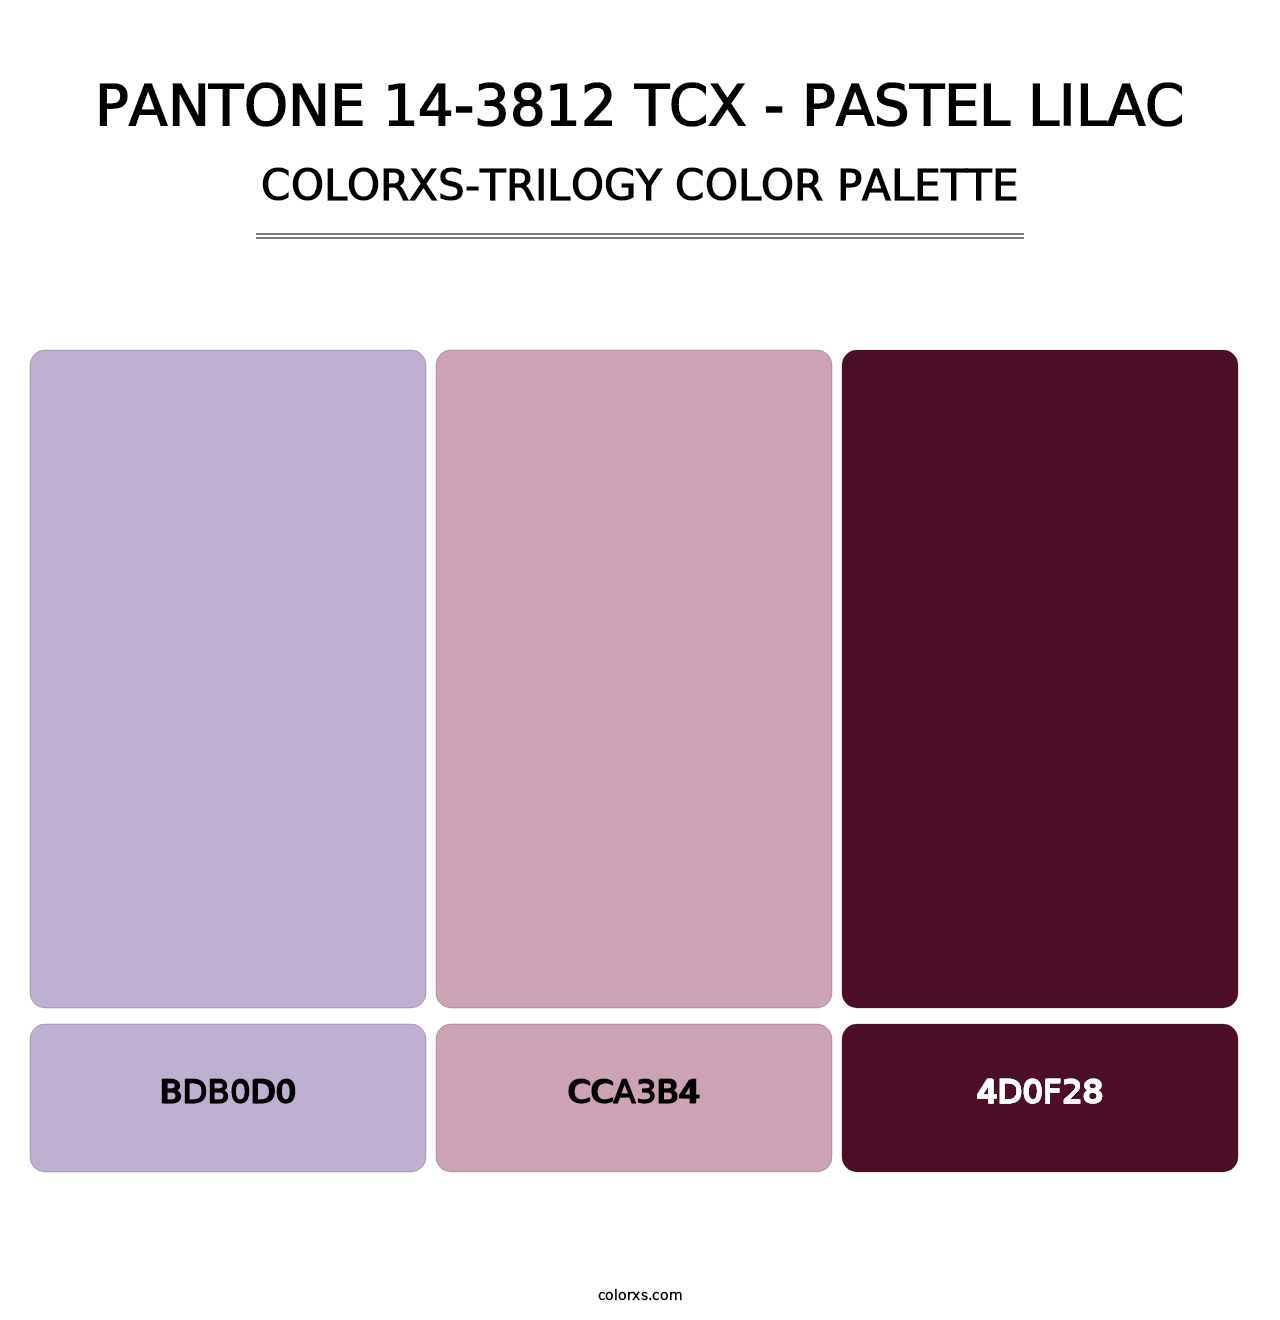 PANTONE 14-3812 TCX - Pastel Lilac - Colorxs Trilogy Palette